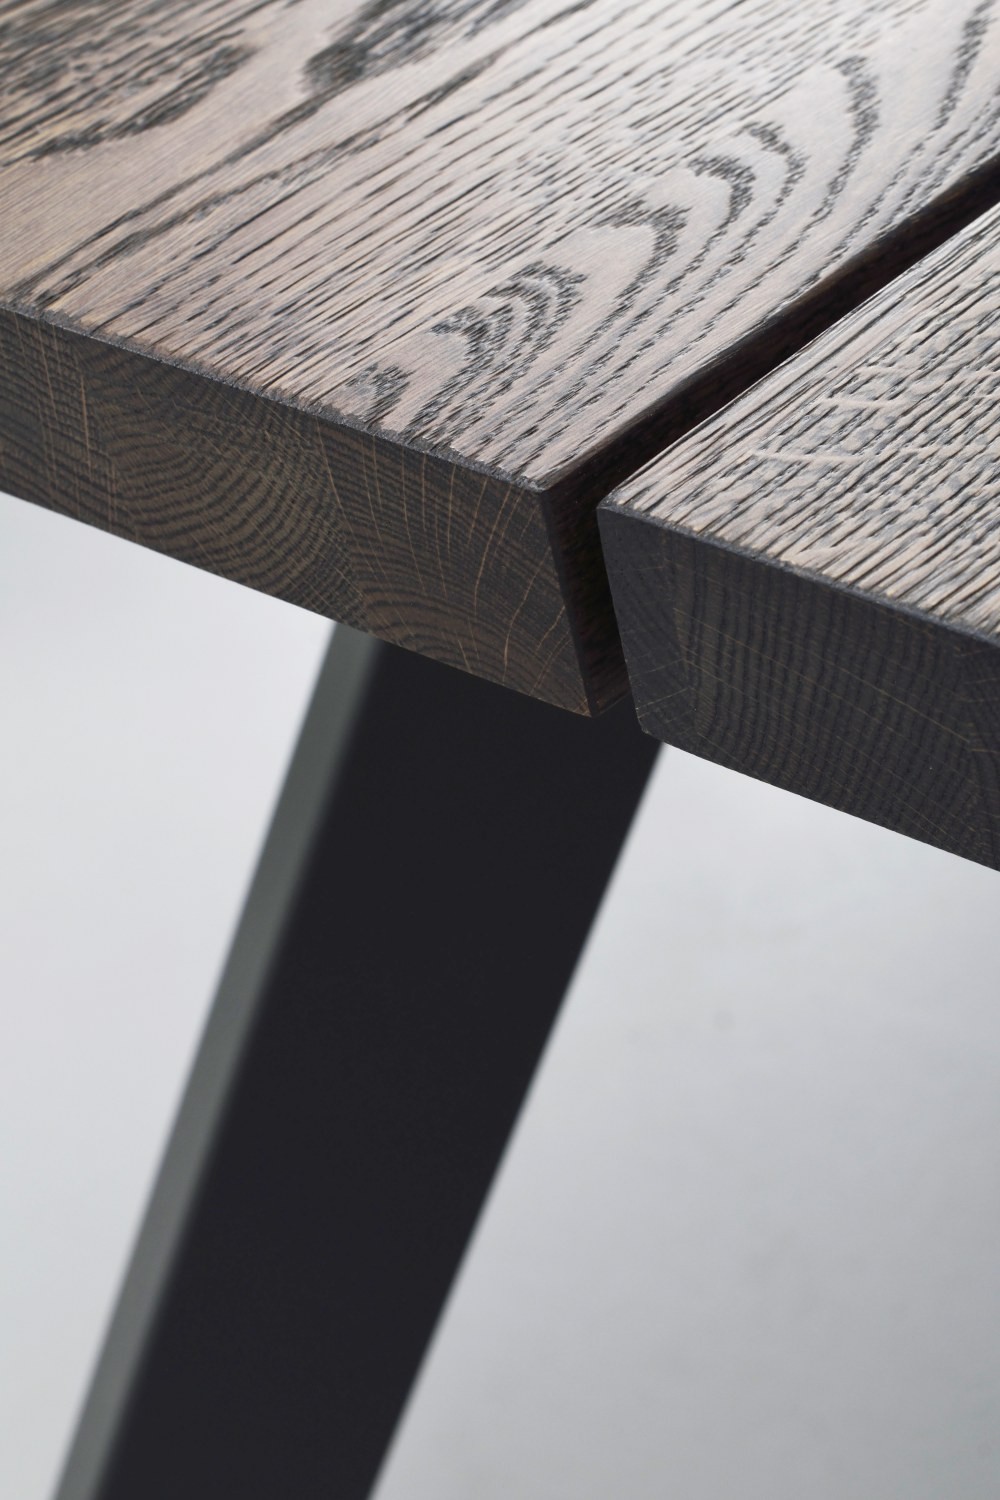 Stół Fred, 240x100 cm, ciemnobrązowy